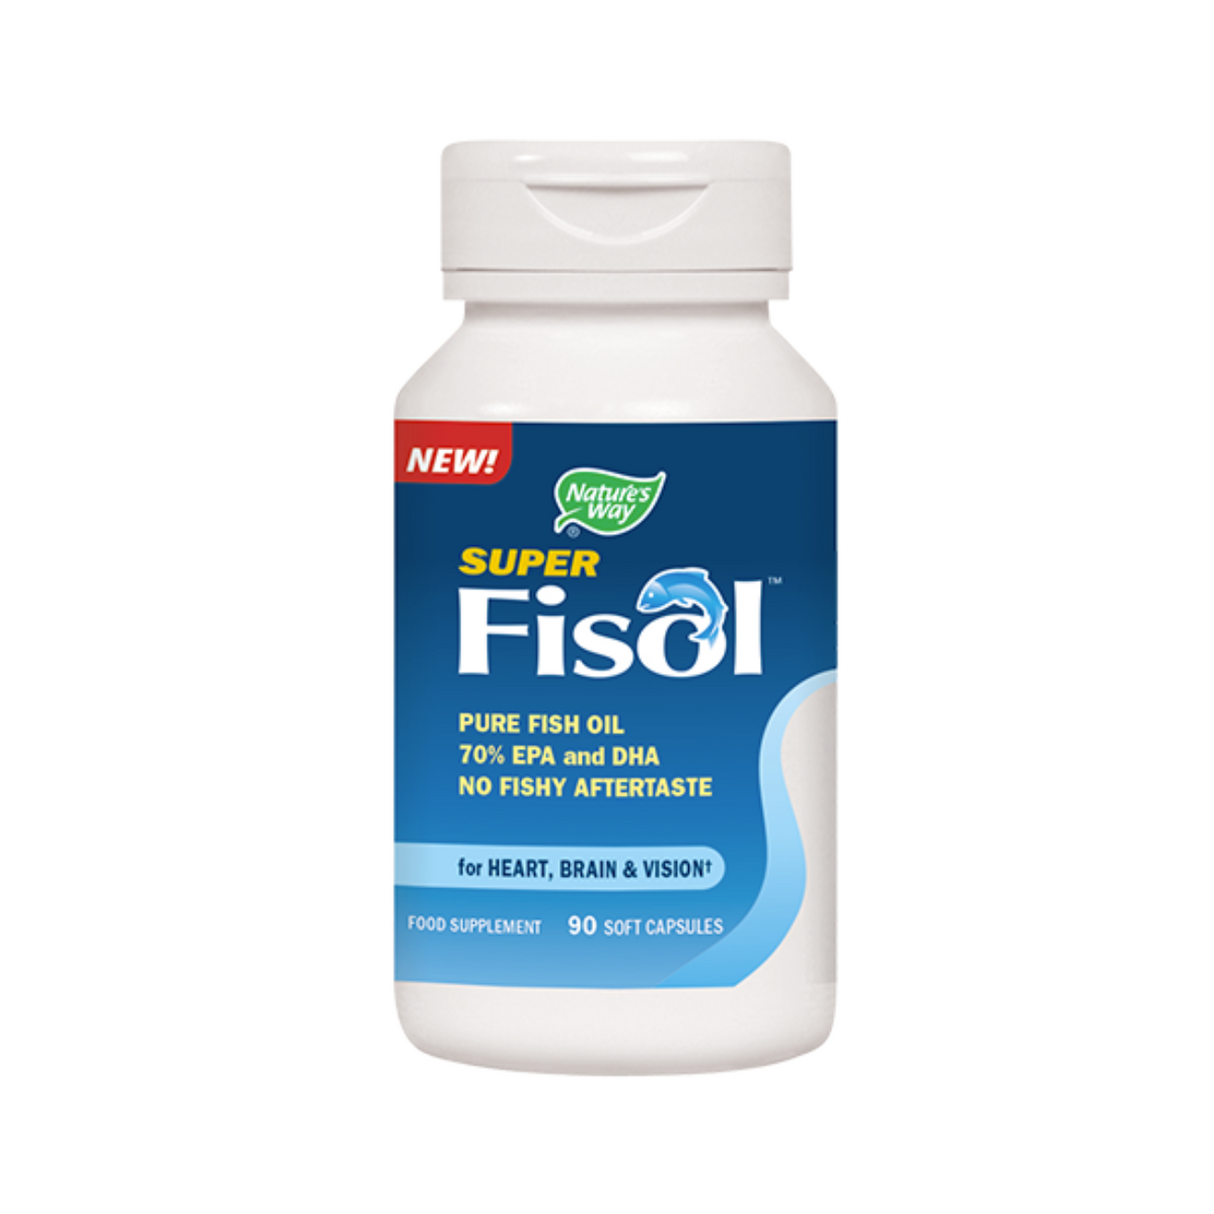 Super Fisol Pure Fish Oil